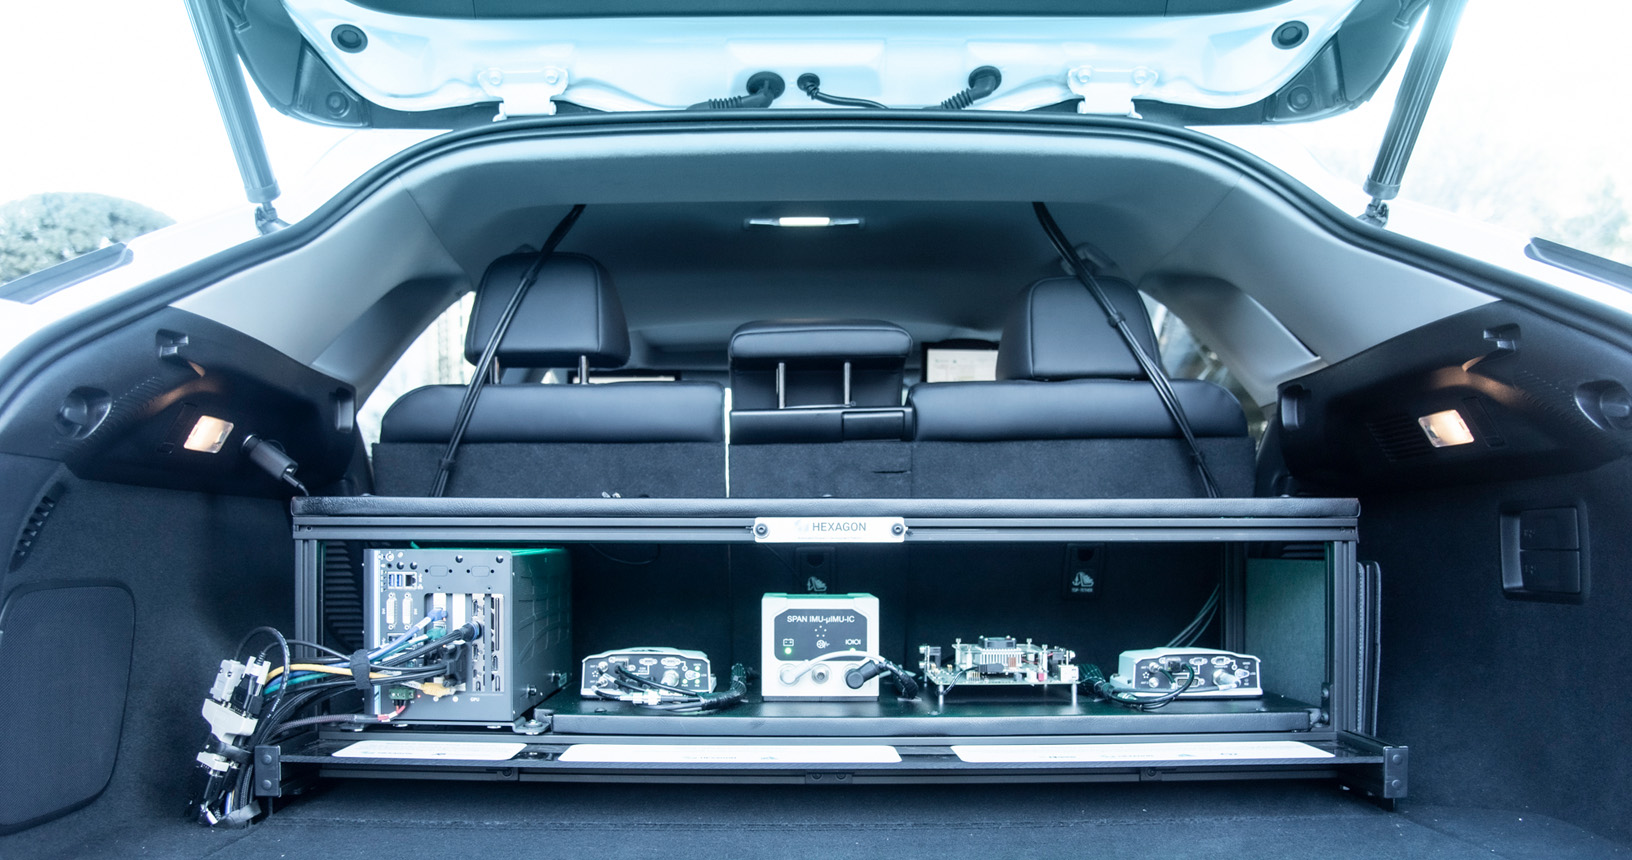 Coffre ouvert d’une Lexus montrant divers équipements pour permettre un fonctionnement autonome.